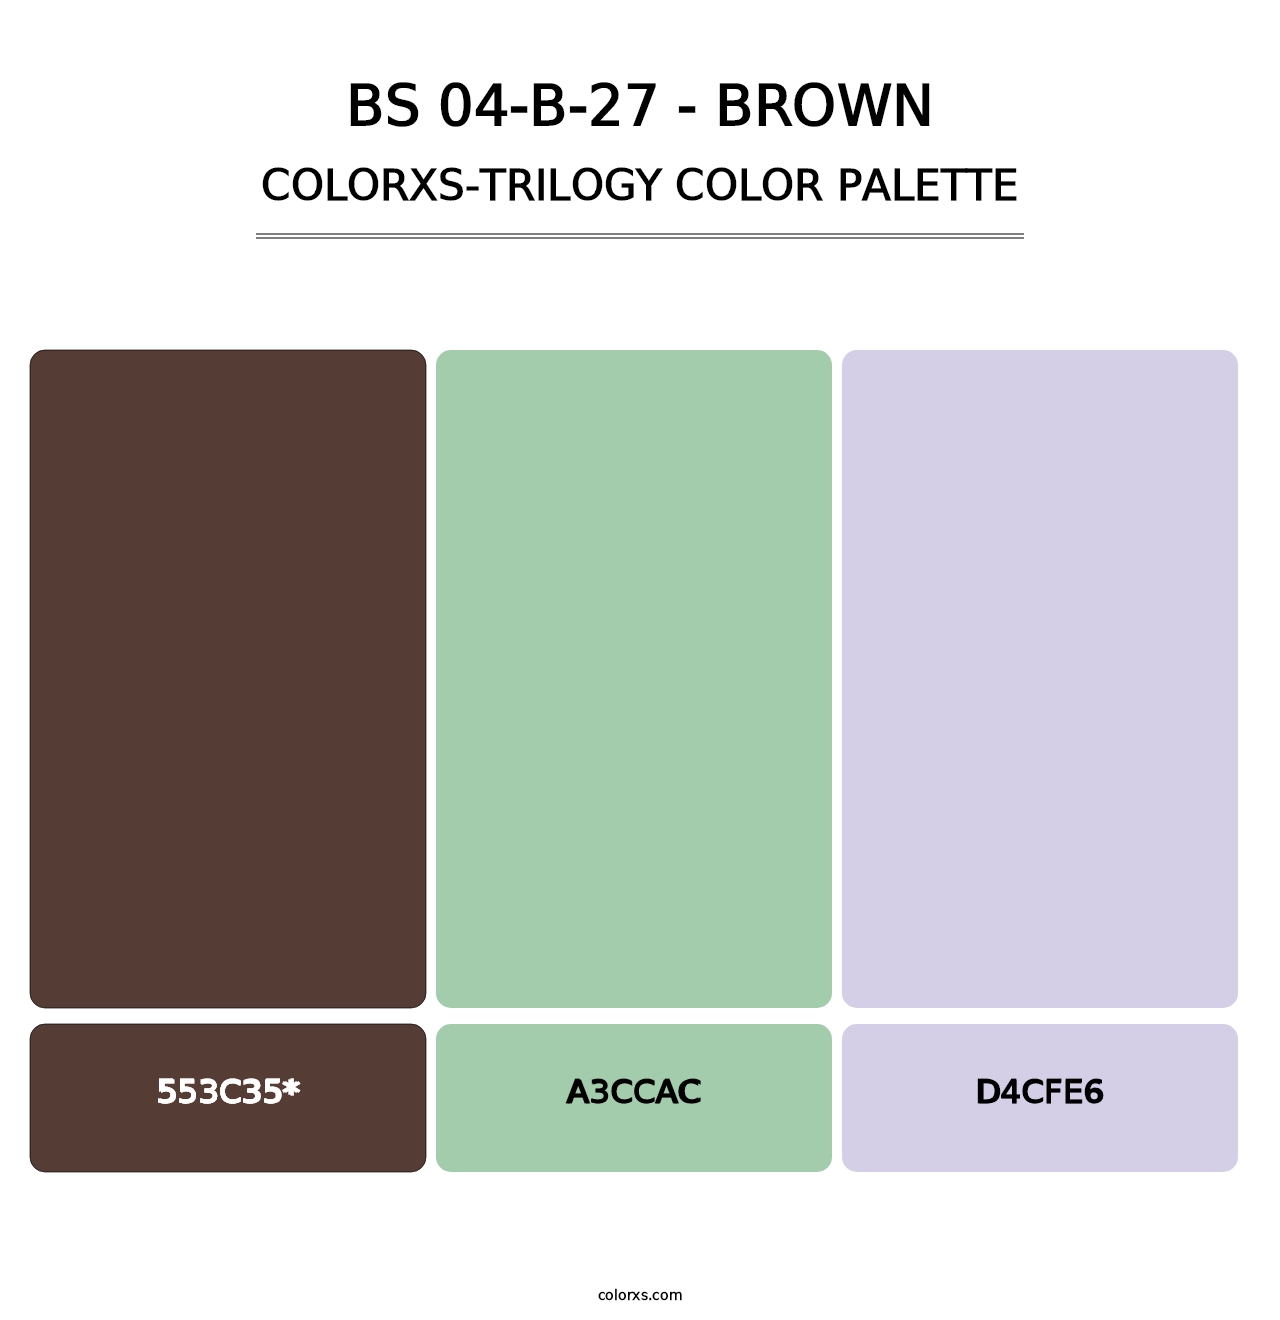 BS 04-B-27 - Brown - Colorxs Trilogy Palette